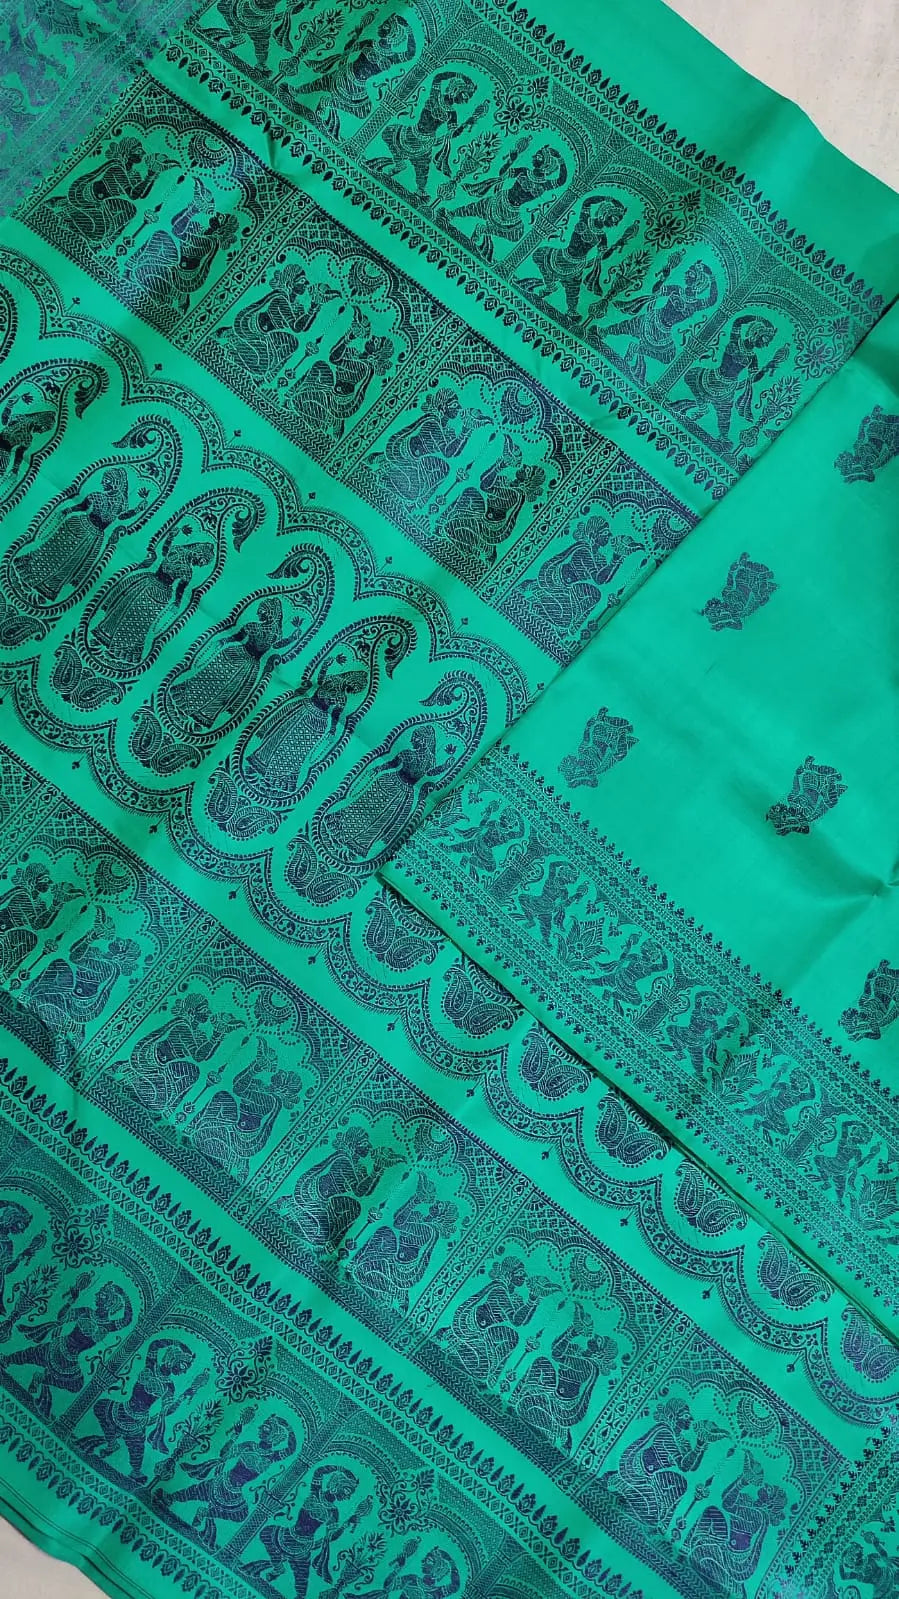 Baluchari silk saree of Bengal green colour